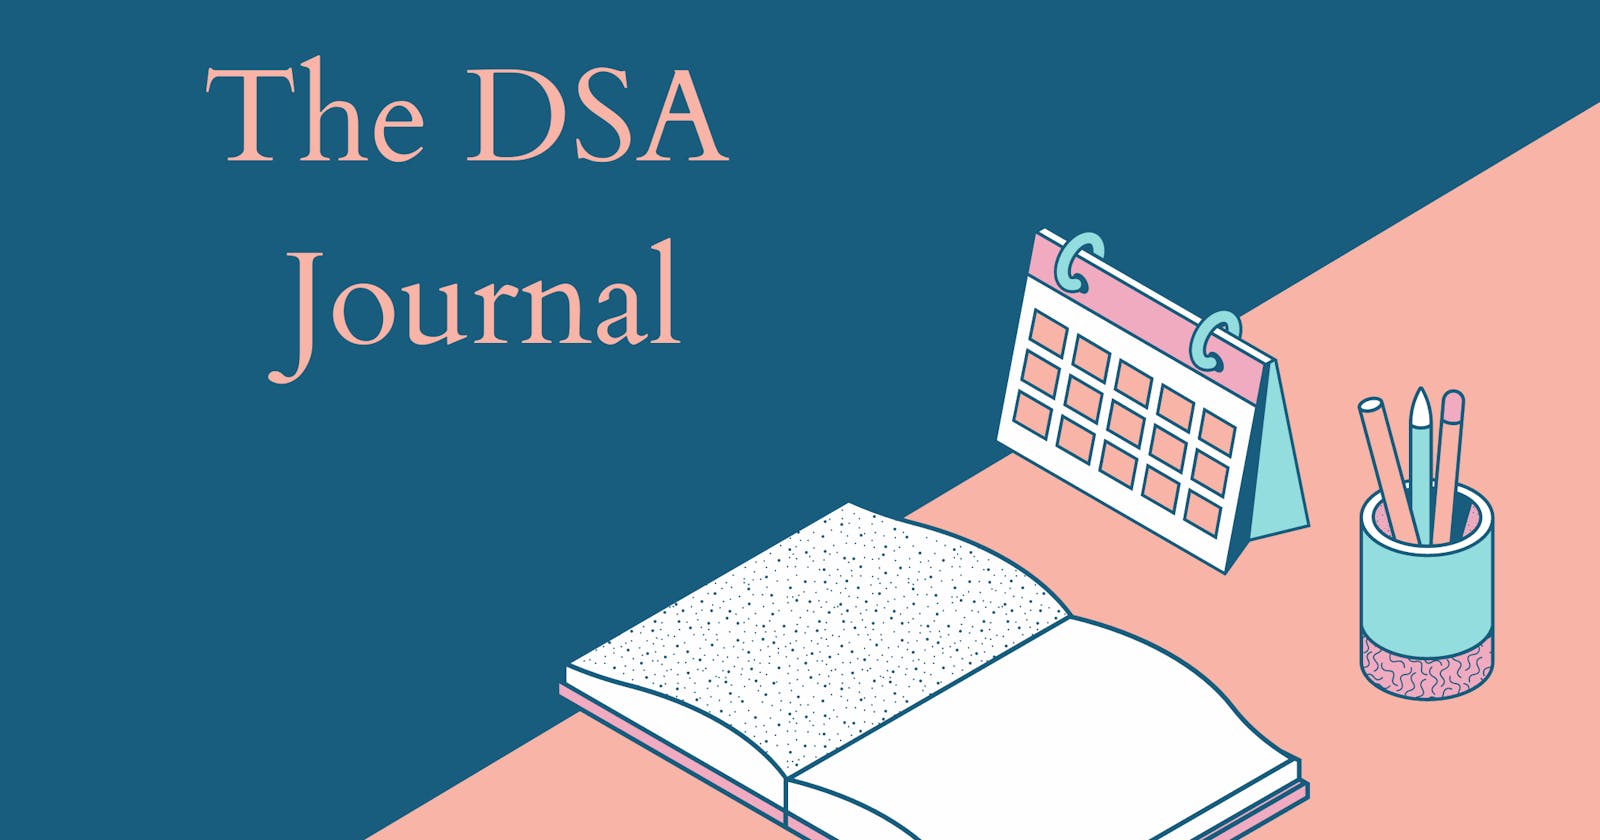 The DSA journal